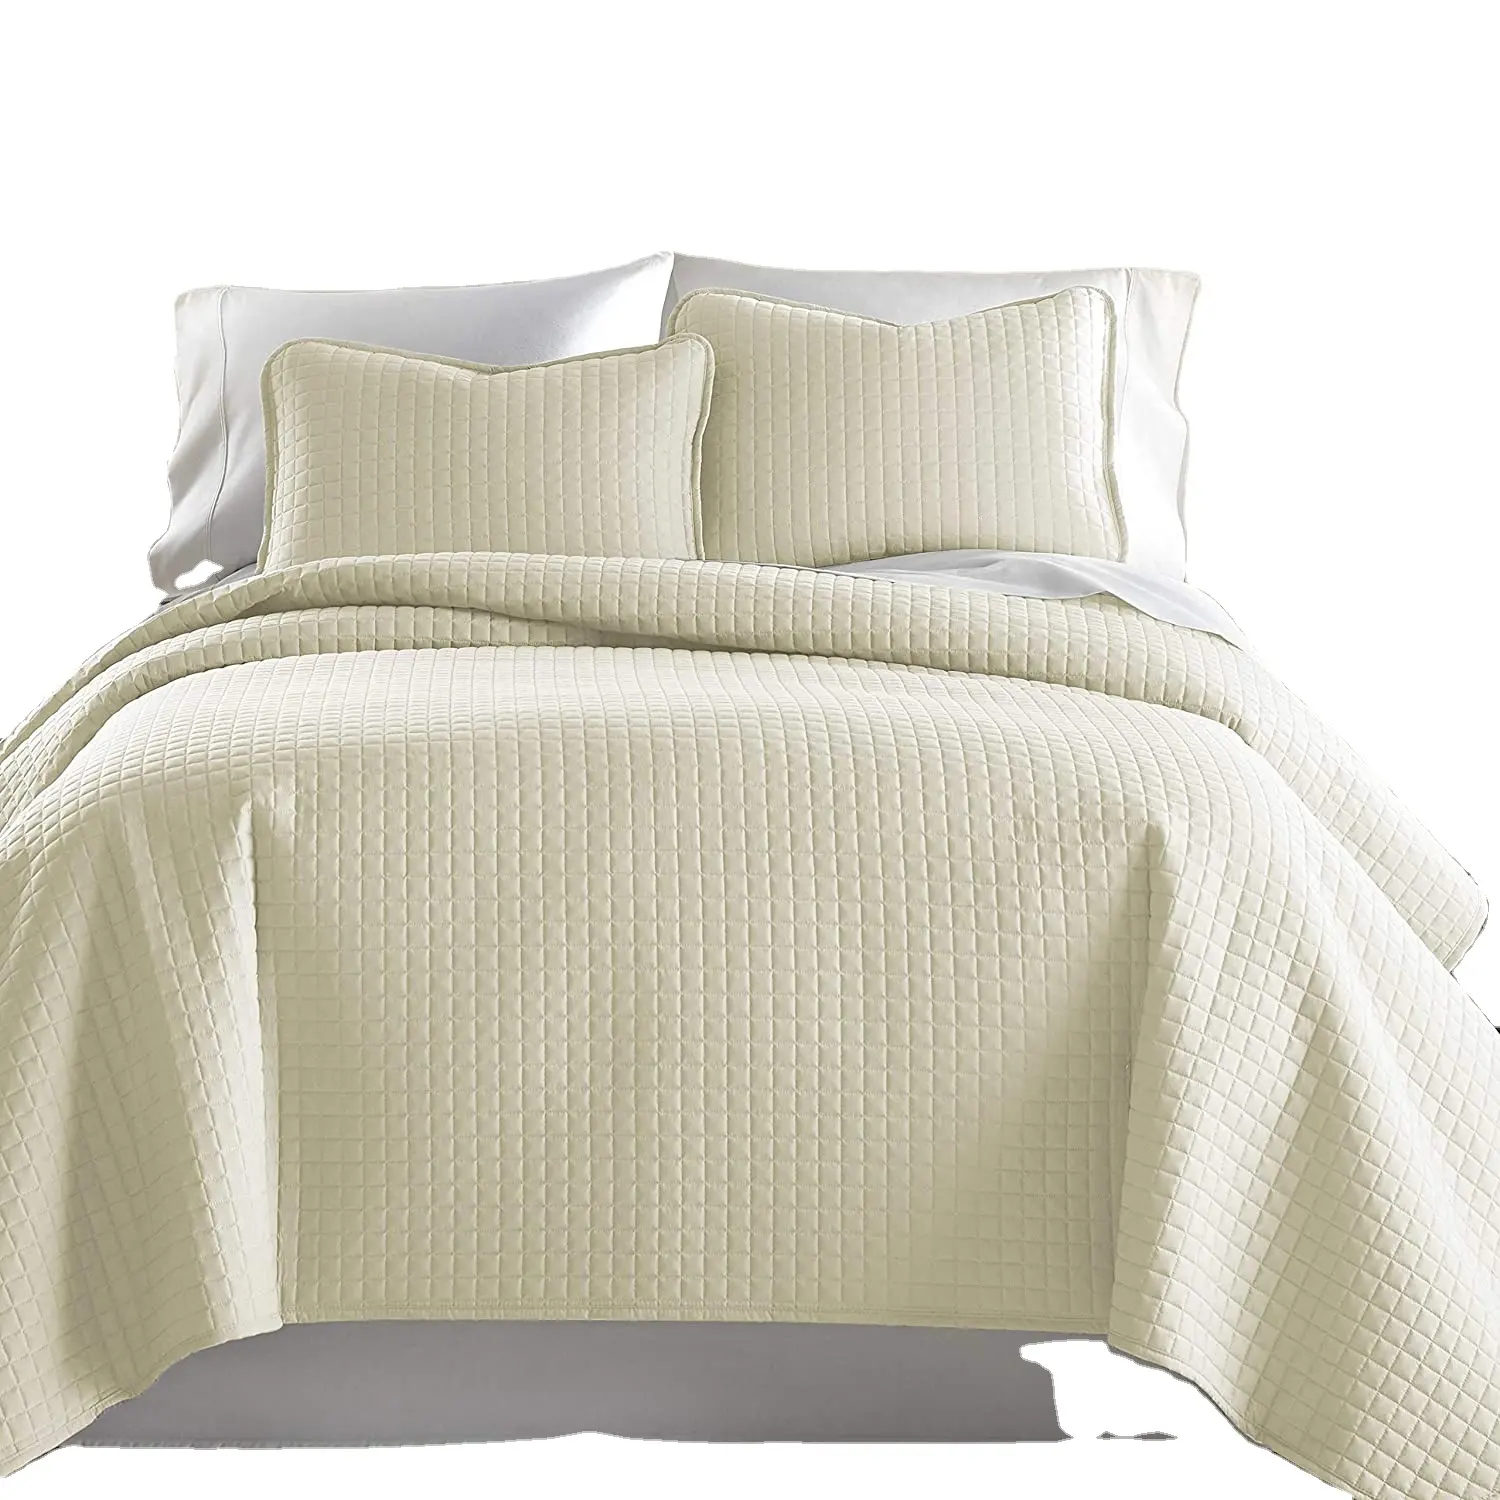 Hochwertige billige Tages decken Neues Design Tages decken & Bettdecken 3 Stück 100% Polyester King Size Tages decke Set cremefarben